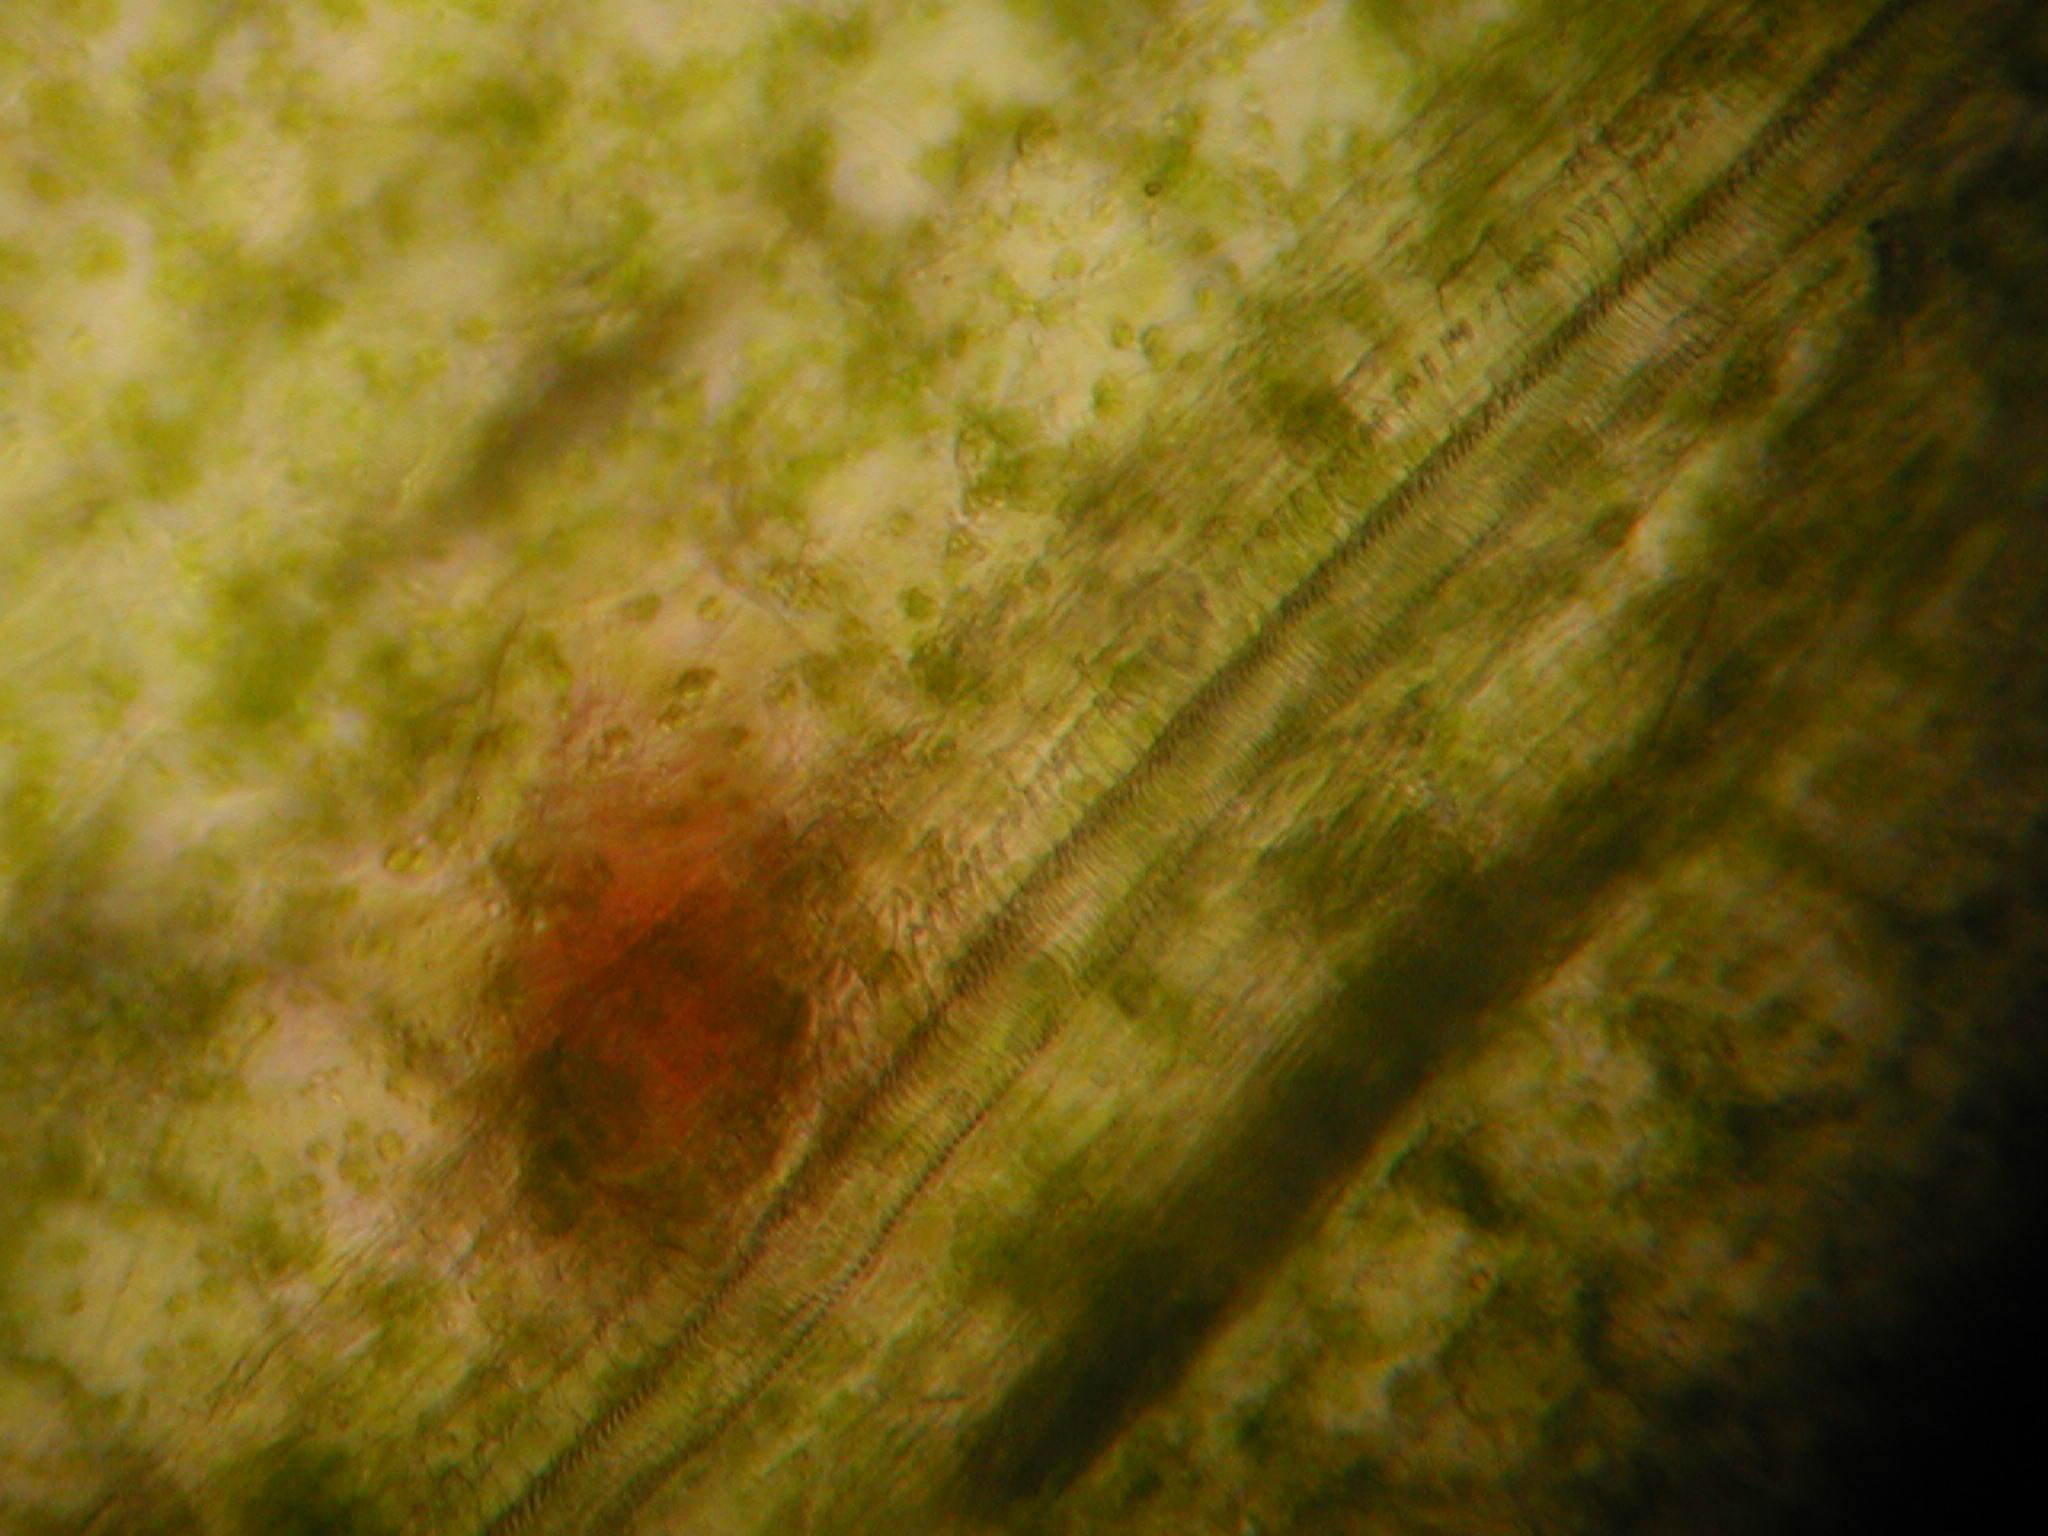 黄豆芽导管显微图图片